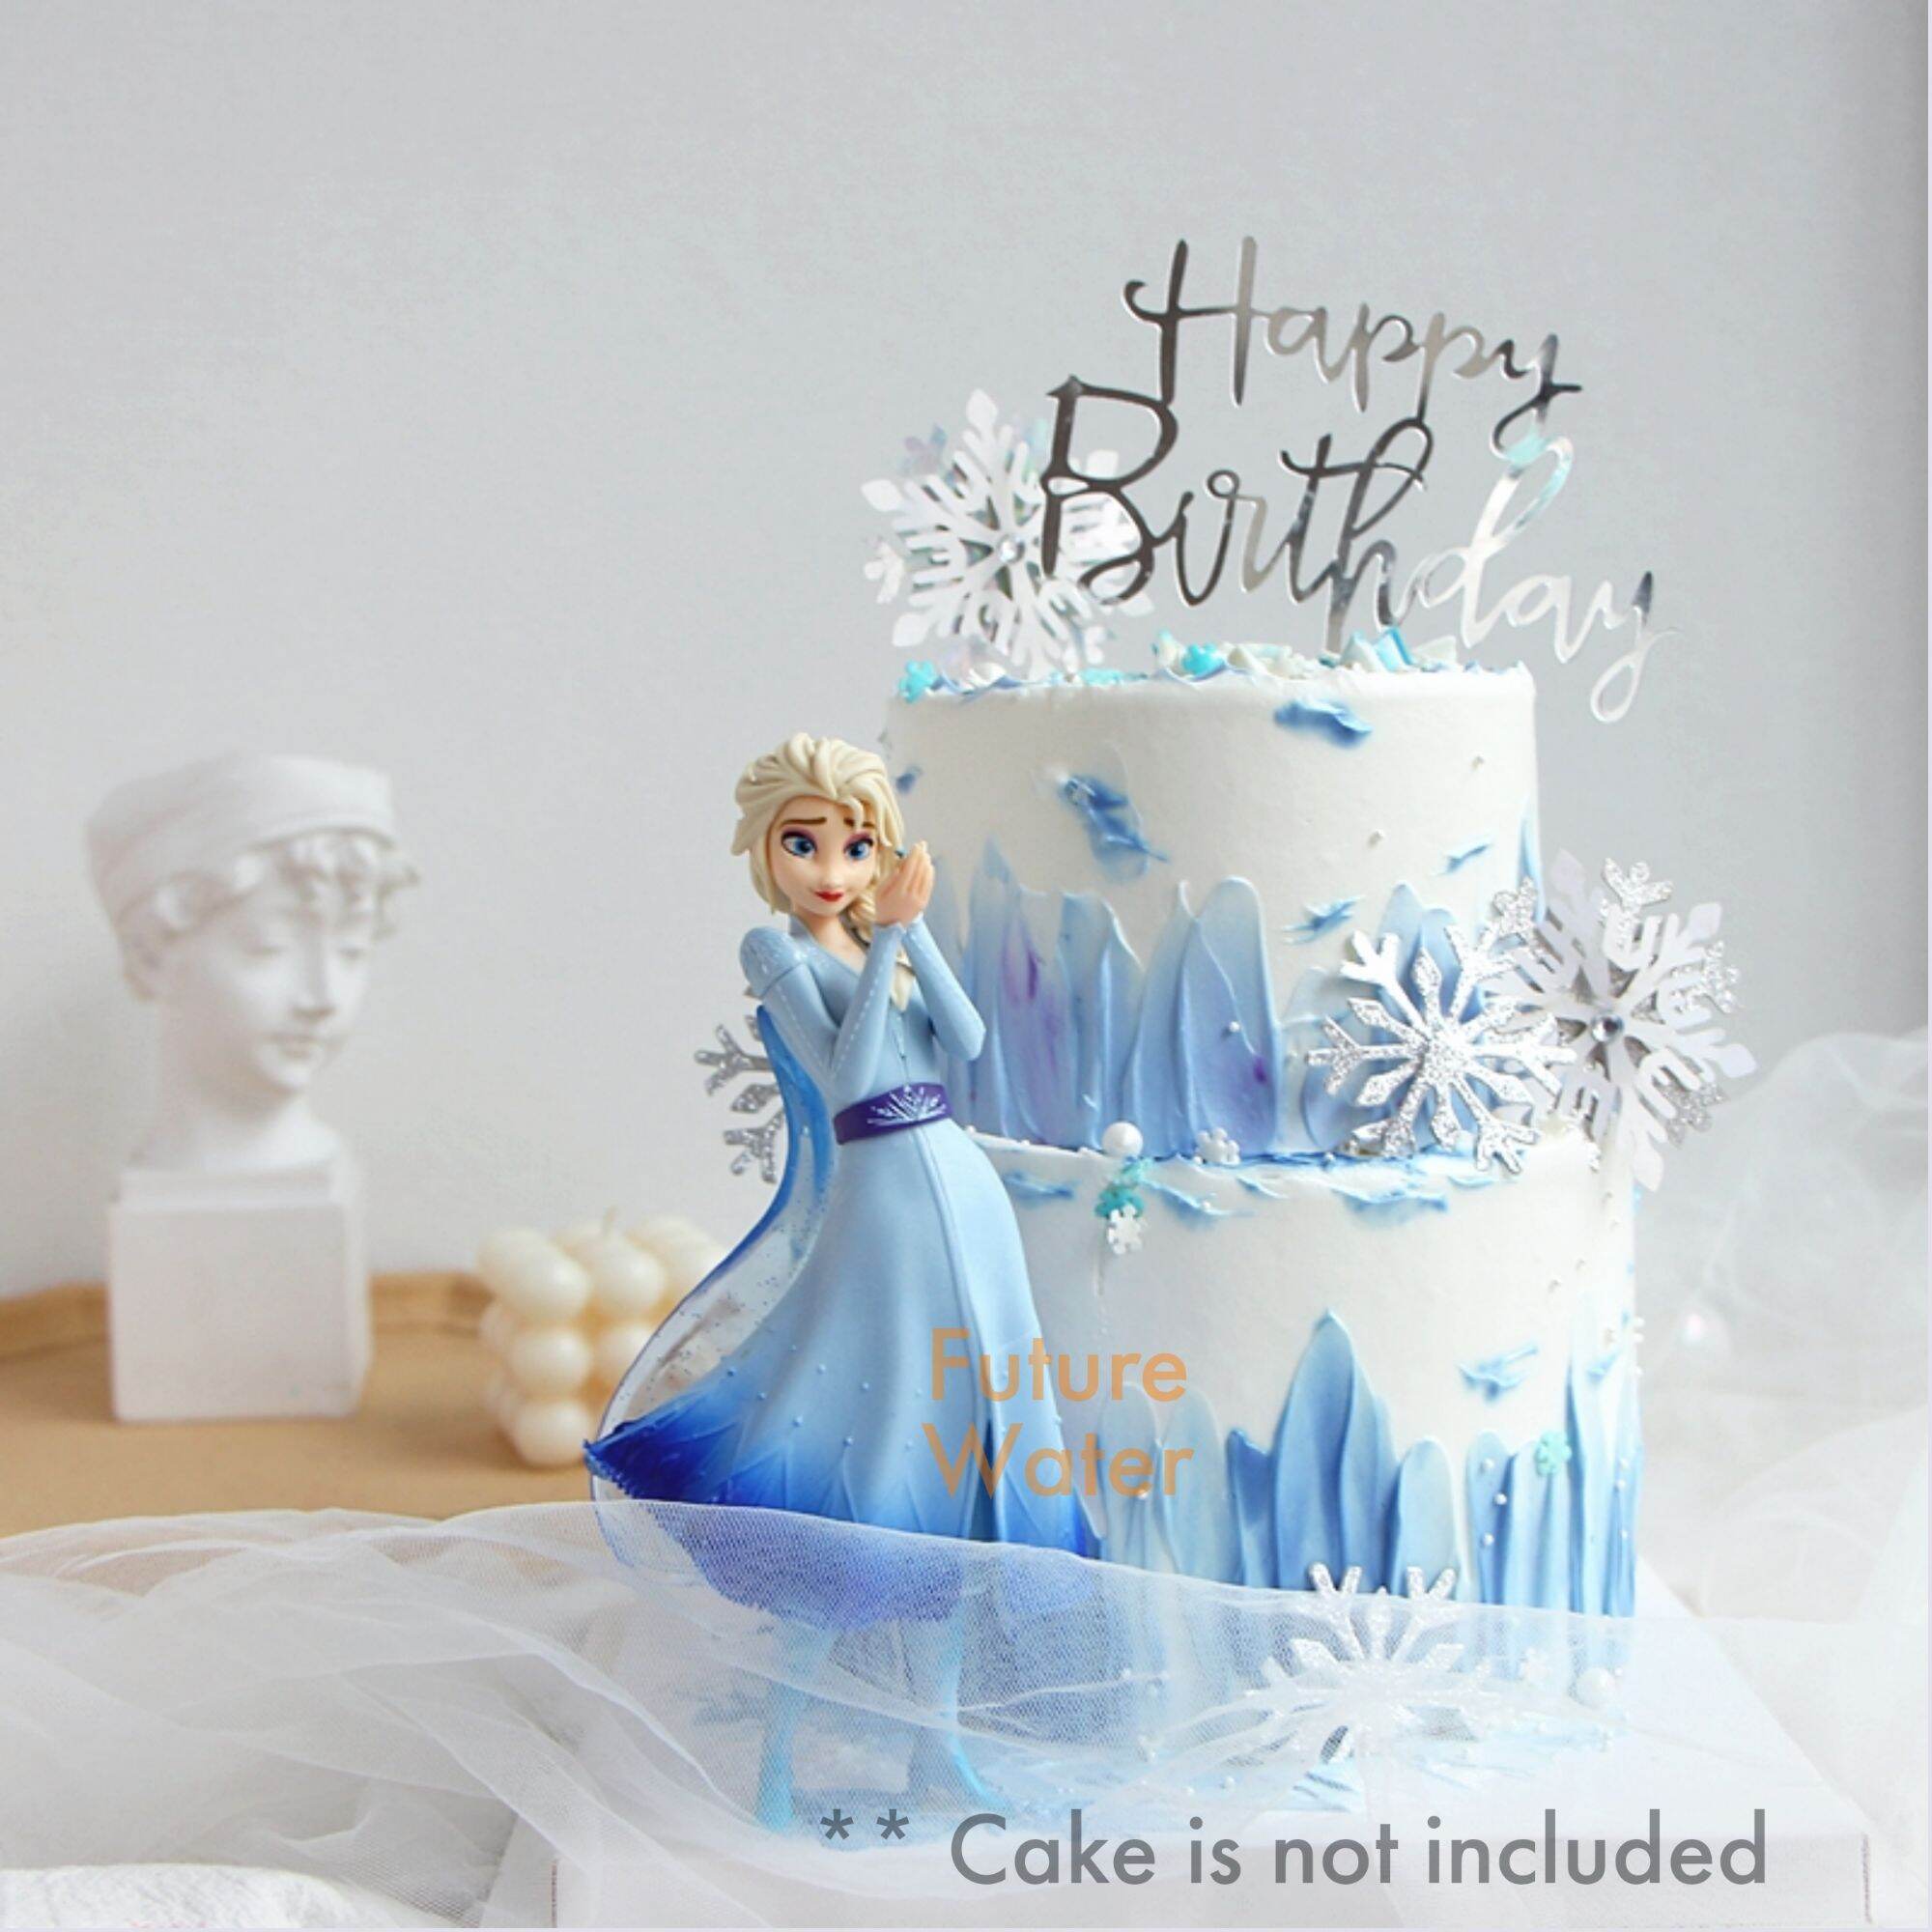 Frozen 2 inspired birthday cake!❄ - Jami's Custom Cookies | Facebook